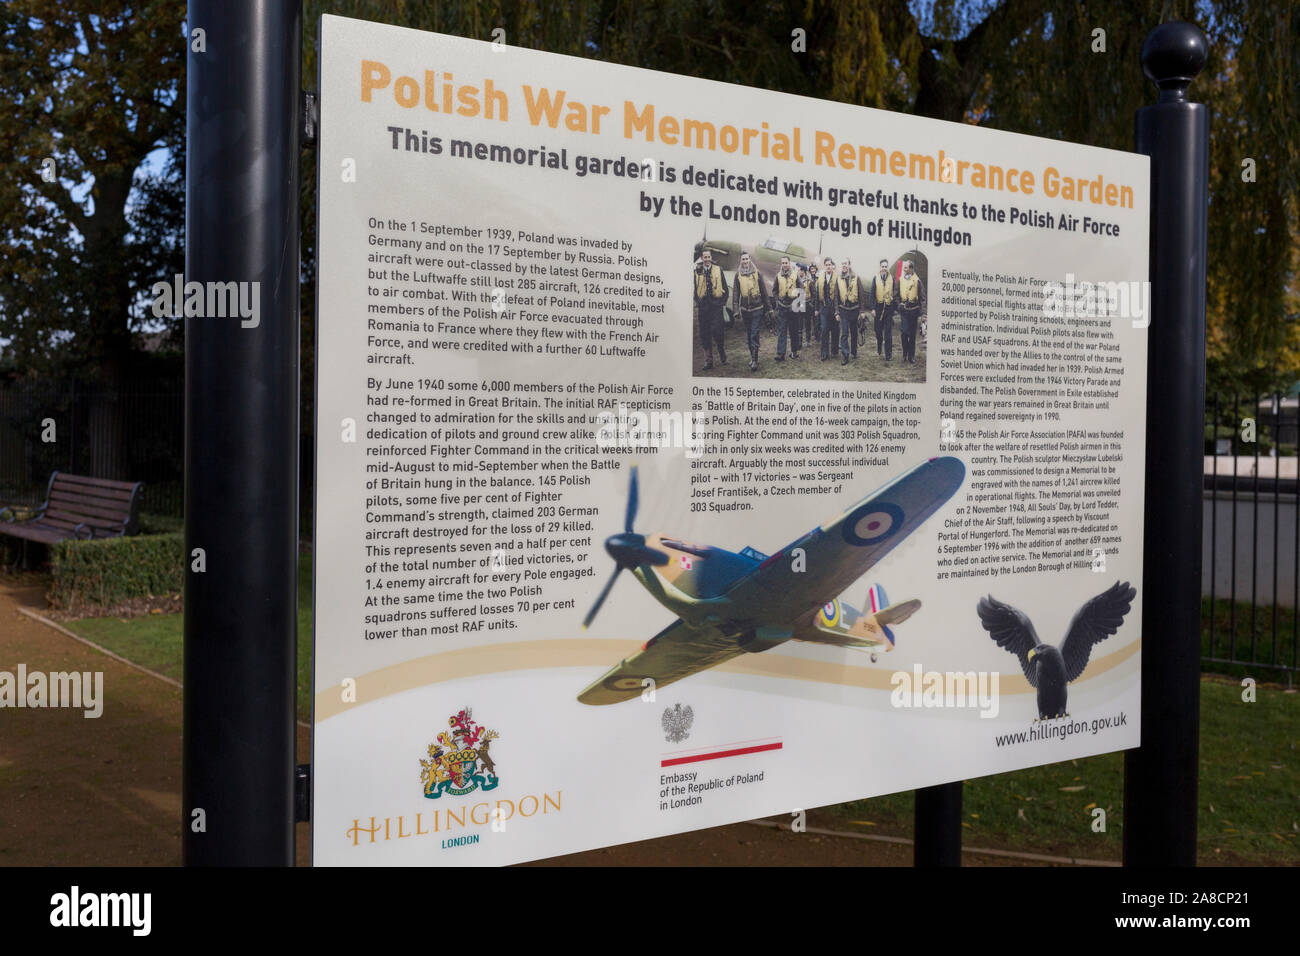 Un panneau d'information dans le jardin du souvenir (ouvert en 2015), qui rend le service et le sacrifice des soldats WW2 Armée de l'Air polonaise, les équipages à la Polish War Memorial, le 6 novembre 2019, dans la région de South Ruislip, Northolt, Londres, Angleterre. Le Polish War Memorial est à la mémoire des aviateurs de la Pologne qui a servi dans la Royal Air Force en tant que partie de la contribution polonaise à la seconde guerre mondiale. Le mémorial a été conçu par Mieczyslaw Lubelski, qui avait été interné dans un camp de travaux forcés pendant la guerre. Il est construit à partir de la pierre de Portland avec lettrage en bronze et un aigle de bronze, symbole de l'Air polonaise pour Banque D'Images